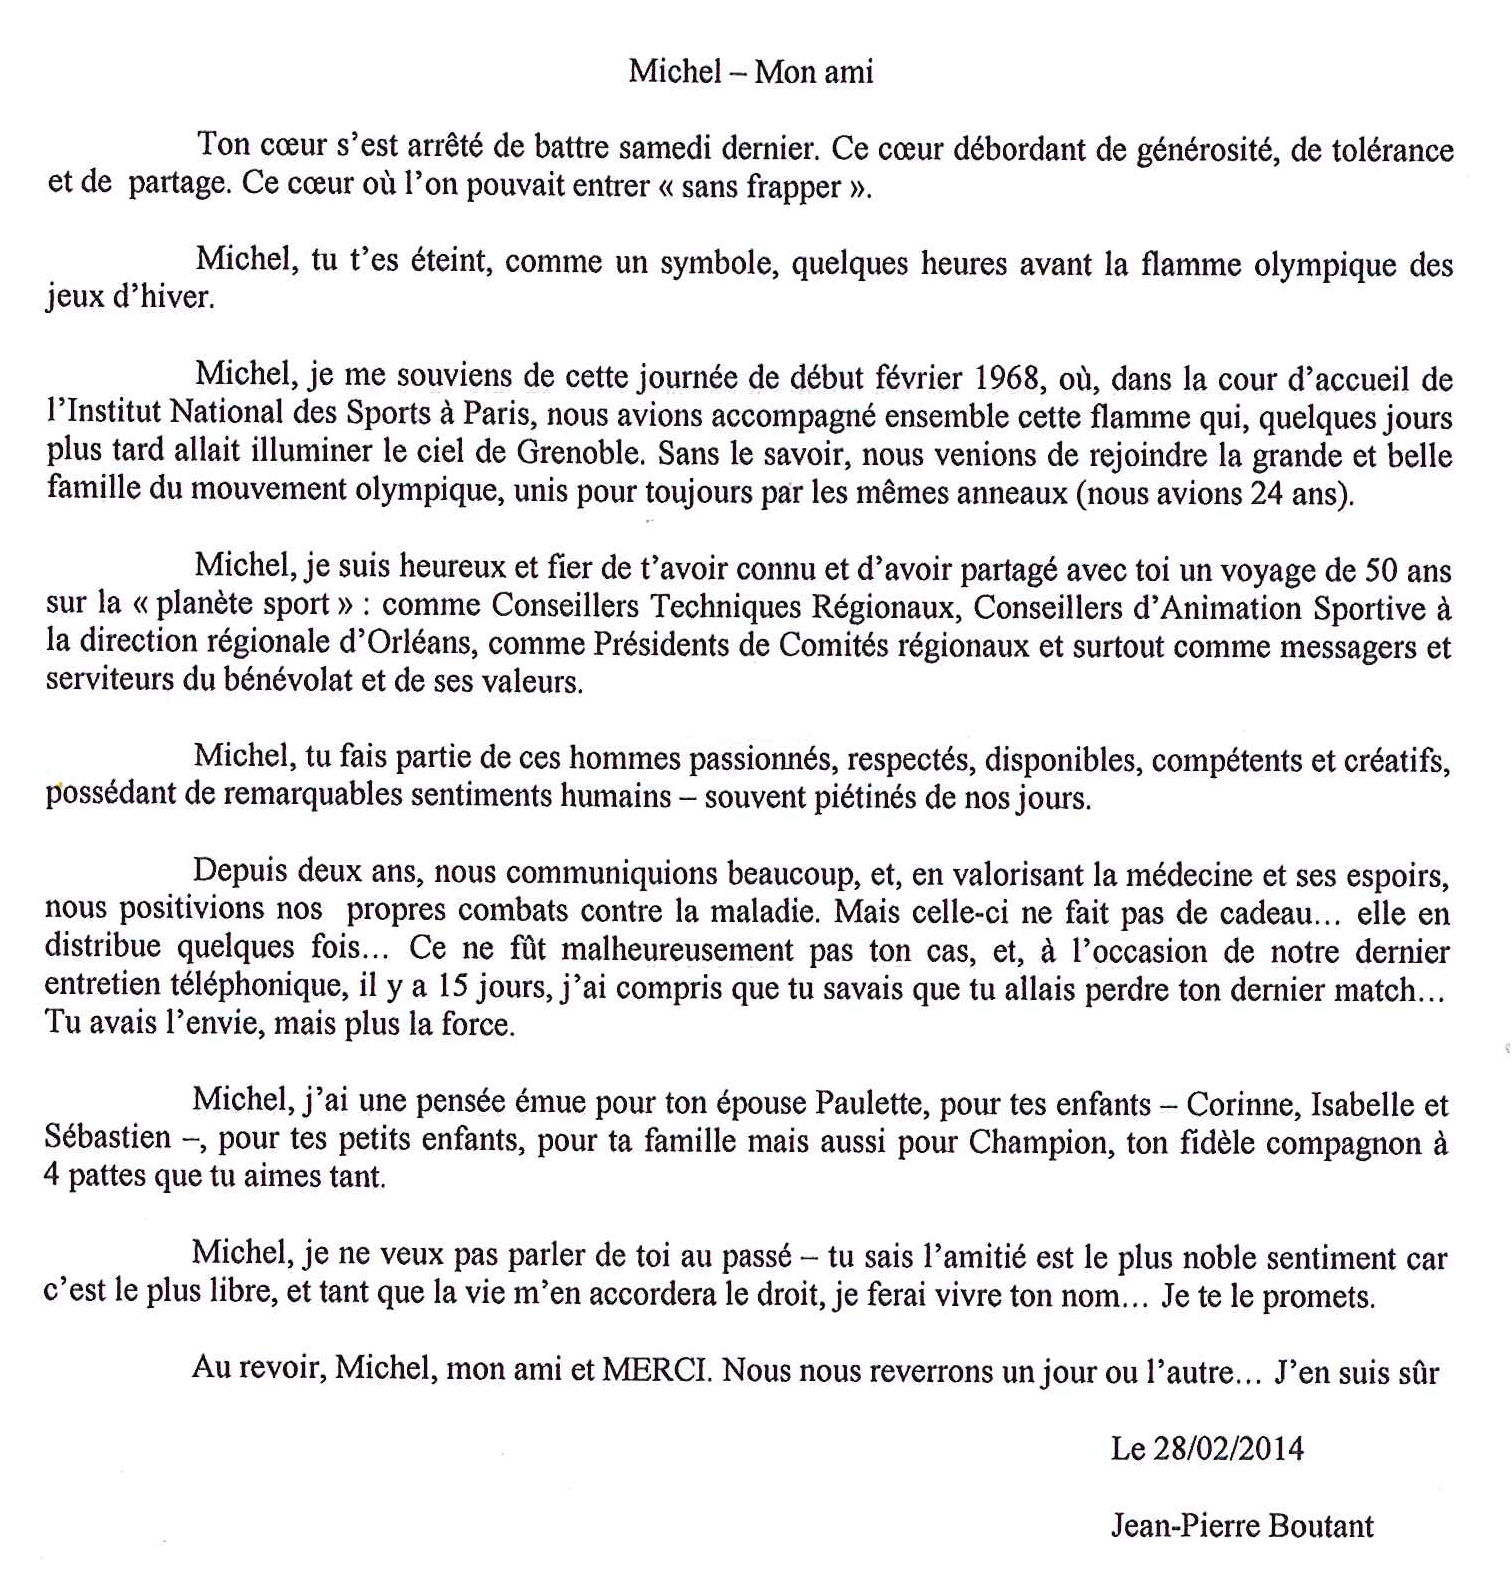 Texte de Jean-Pierre Boutant ancien Prsident de la ligue d'Athltisme, membre du Cros